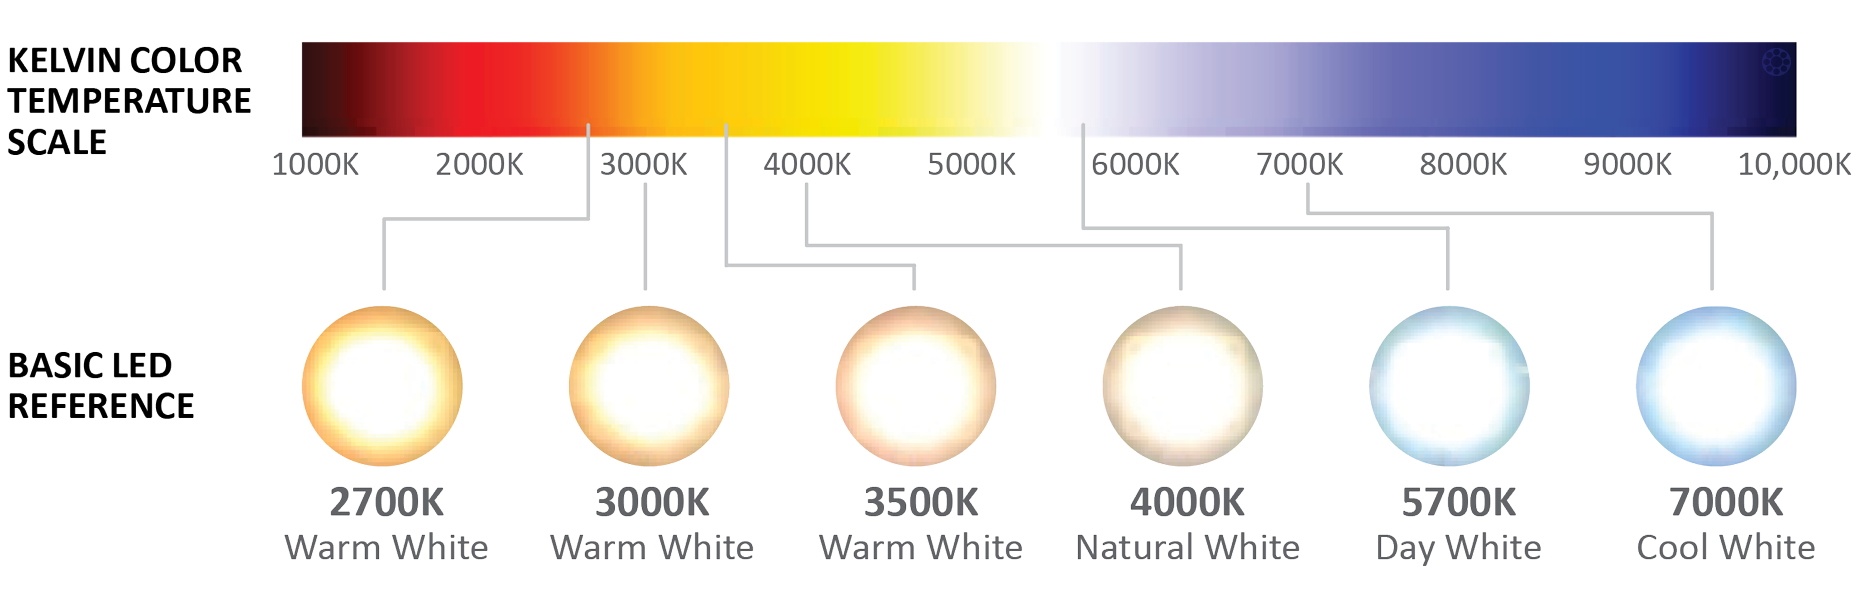 Теплый свет температура. Светодиодные лампы градация цветности. Температура светодиодных ламп таблица. Температура света в Кельвинах таблица. Таблица свечения светодиодных ламп.